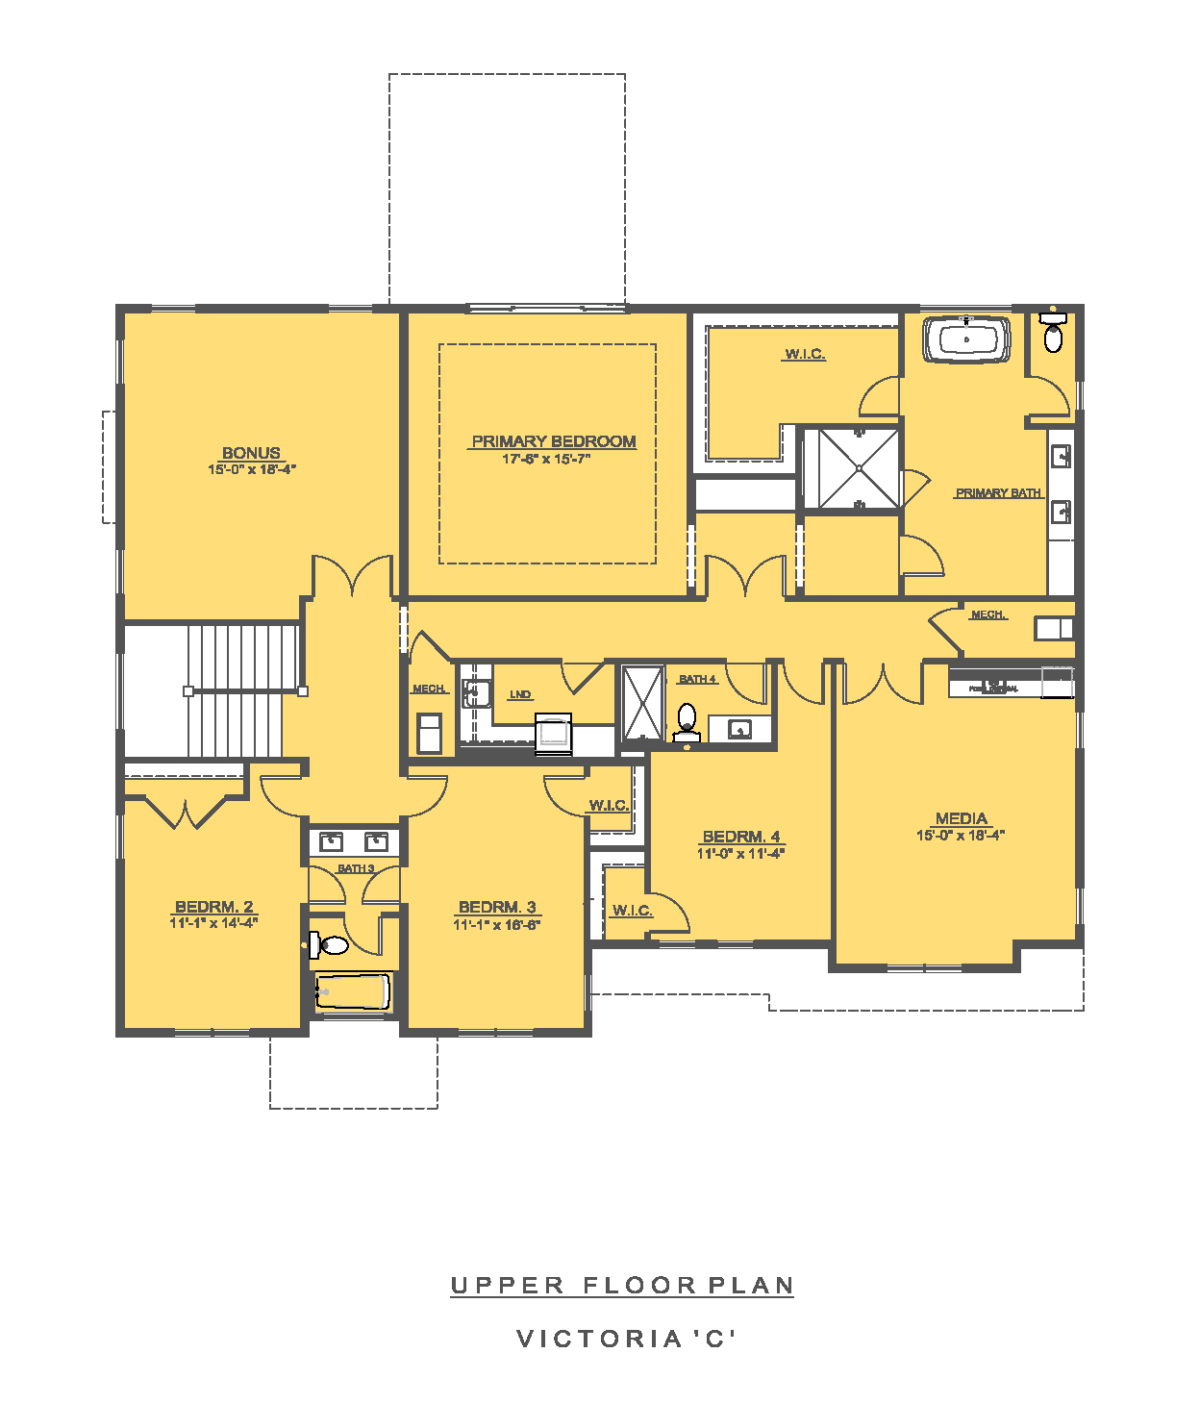 The Victoria Upper Floor Plan